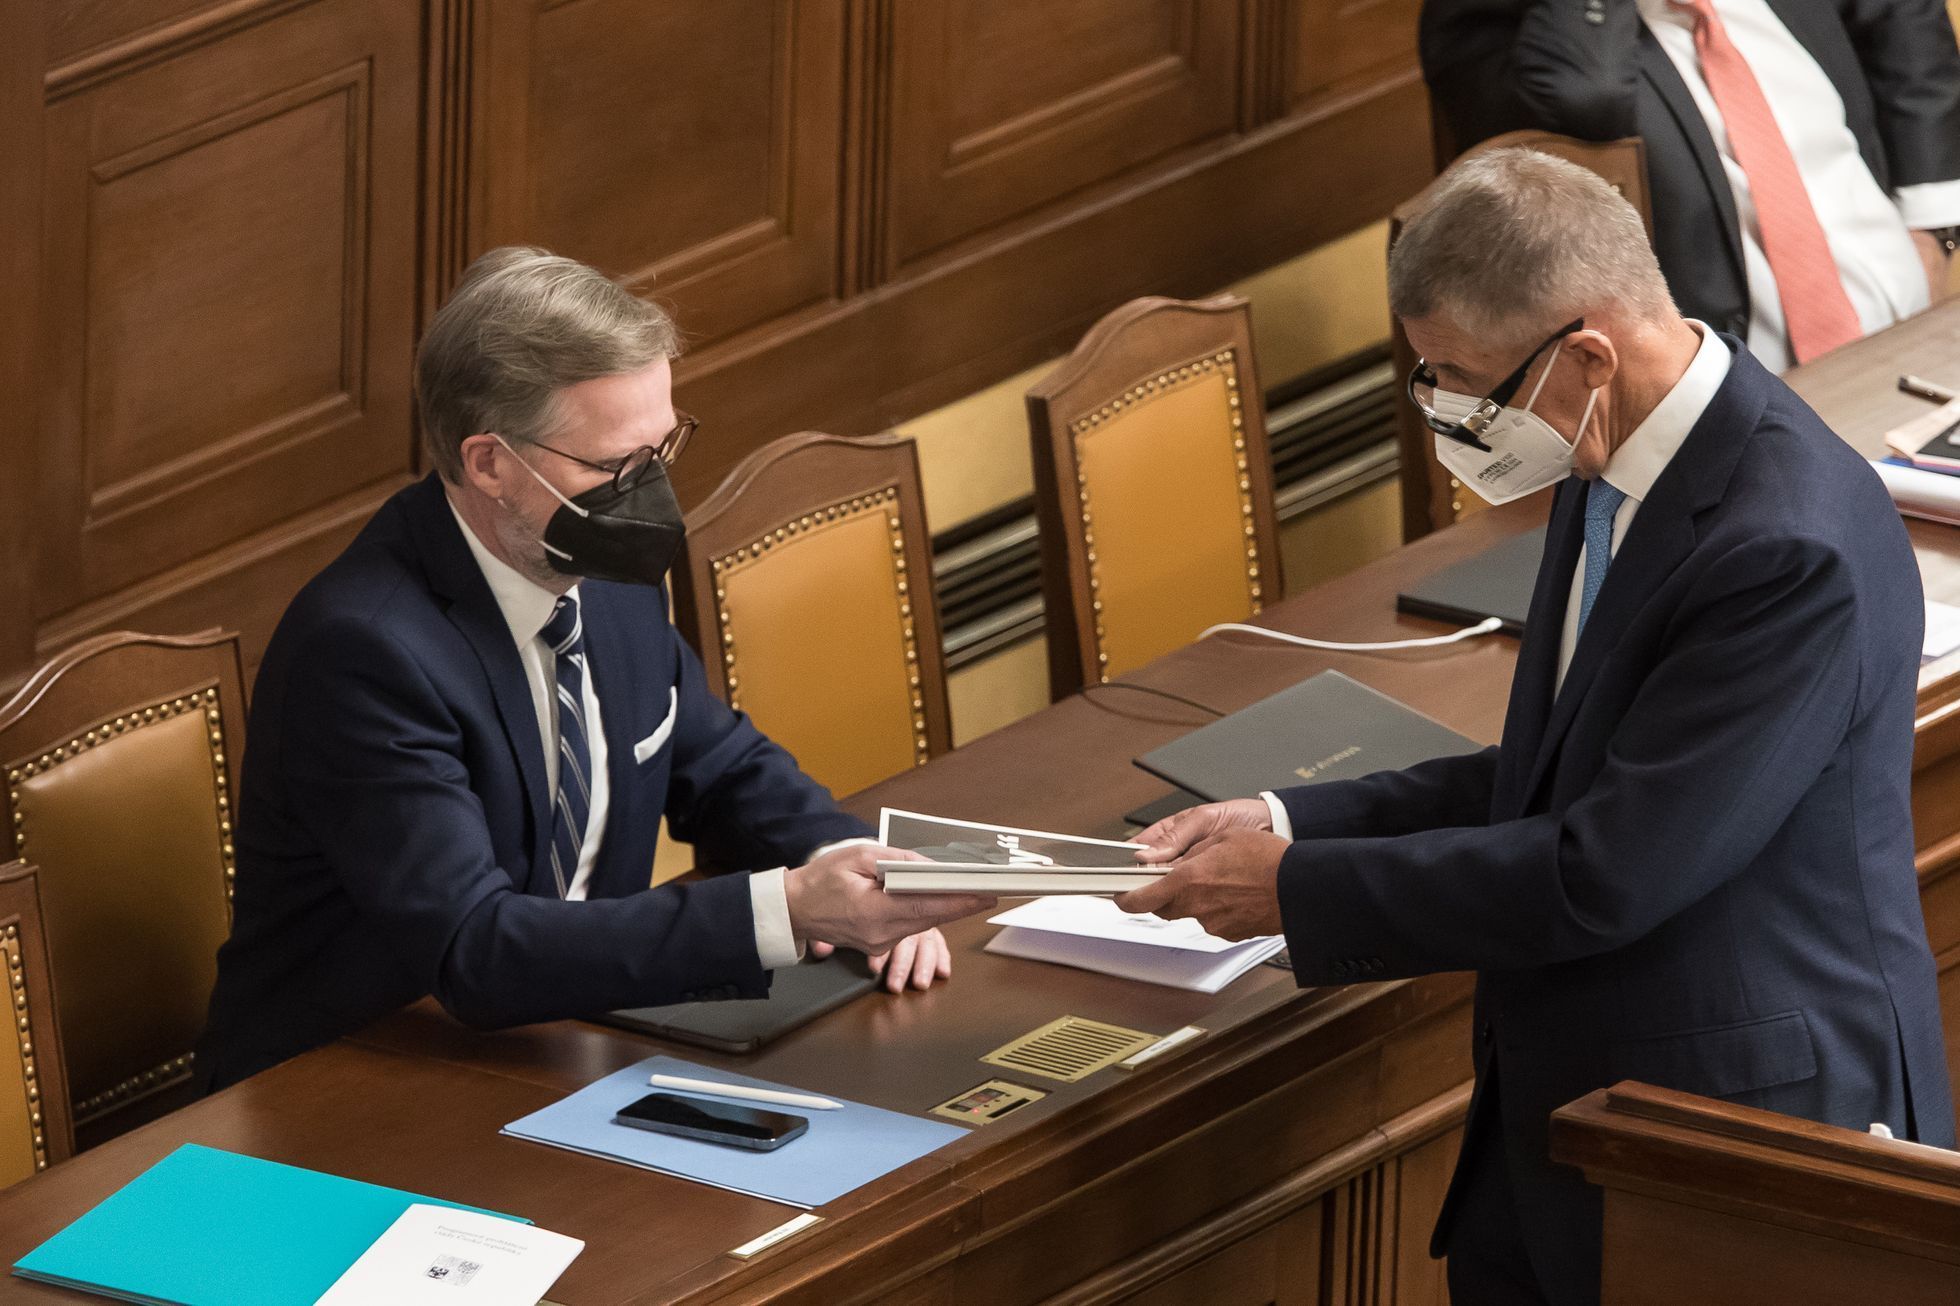 Poslanecká sněmovna - hlasování o důvěře vládě - Petr Fiala, Andrej Babiš